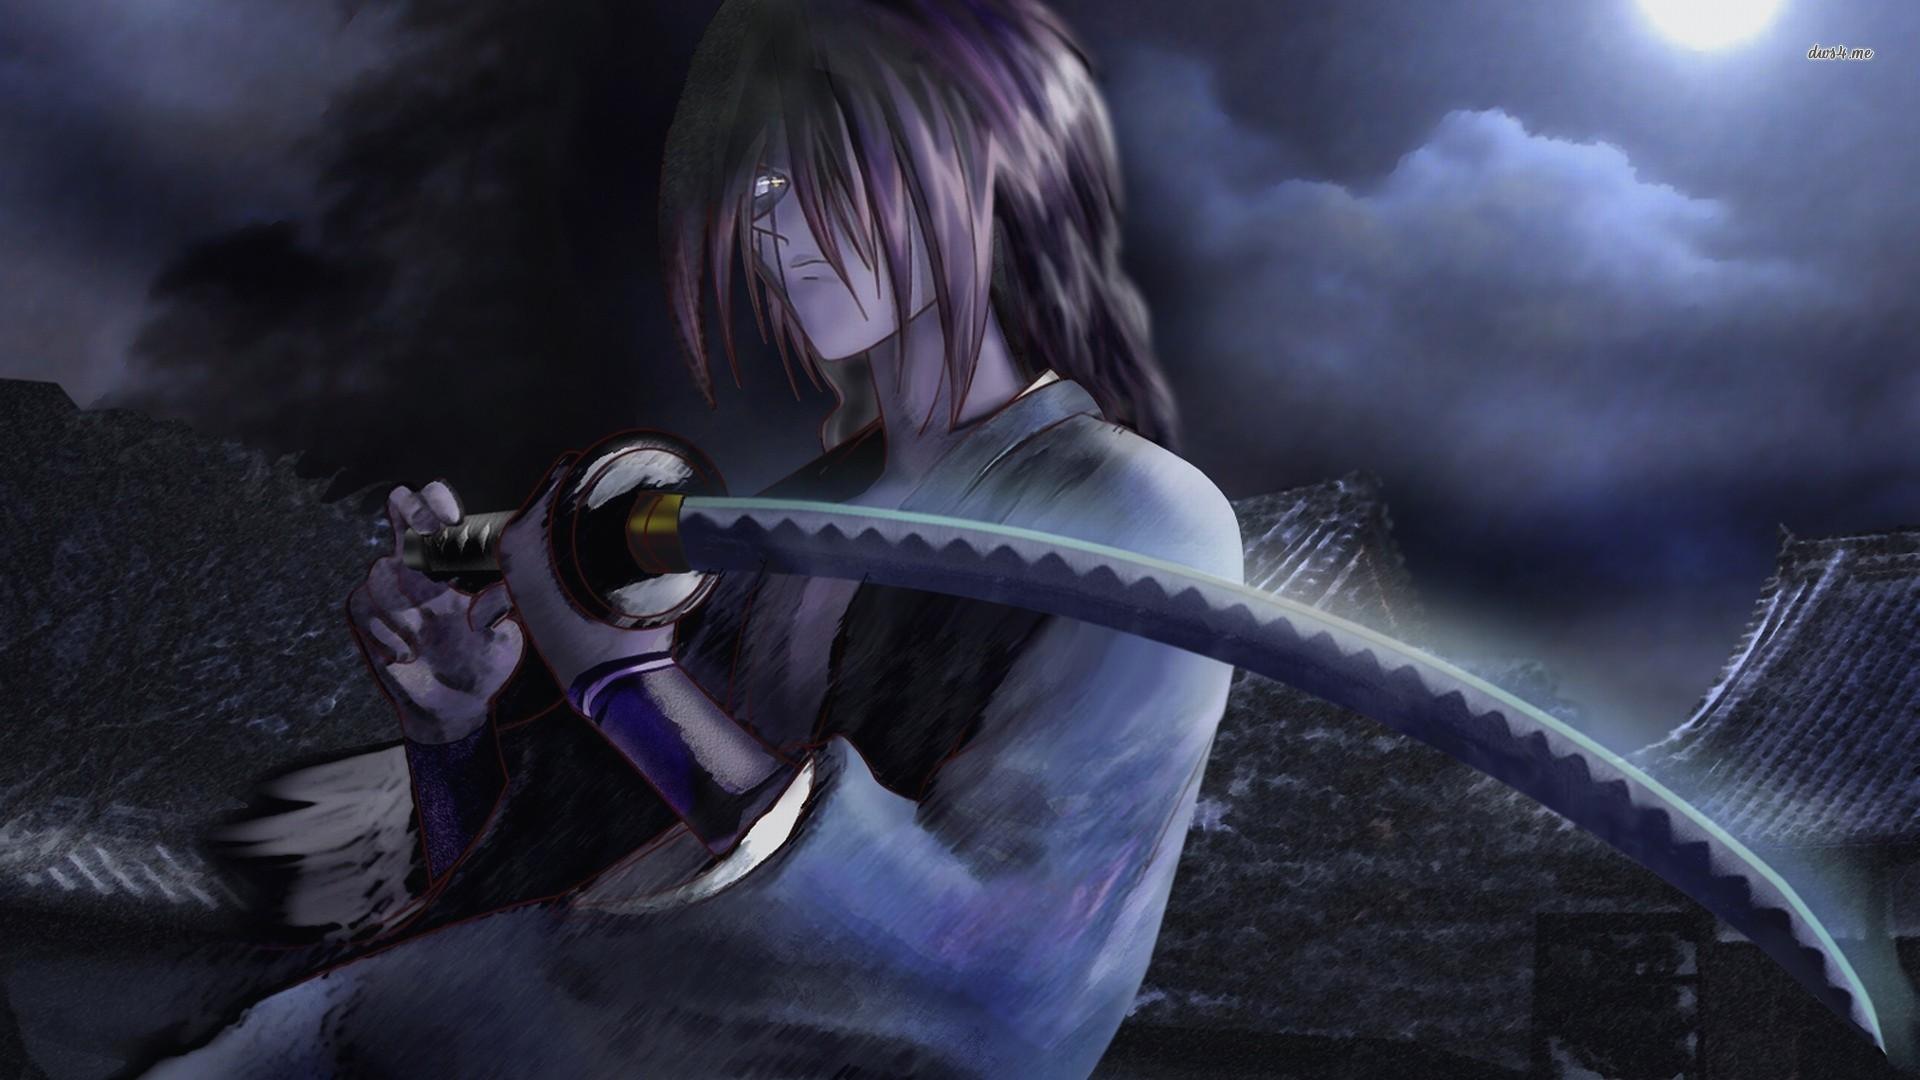 Rurouni Kenshin wallpapers HD quality